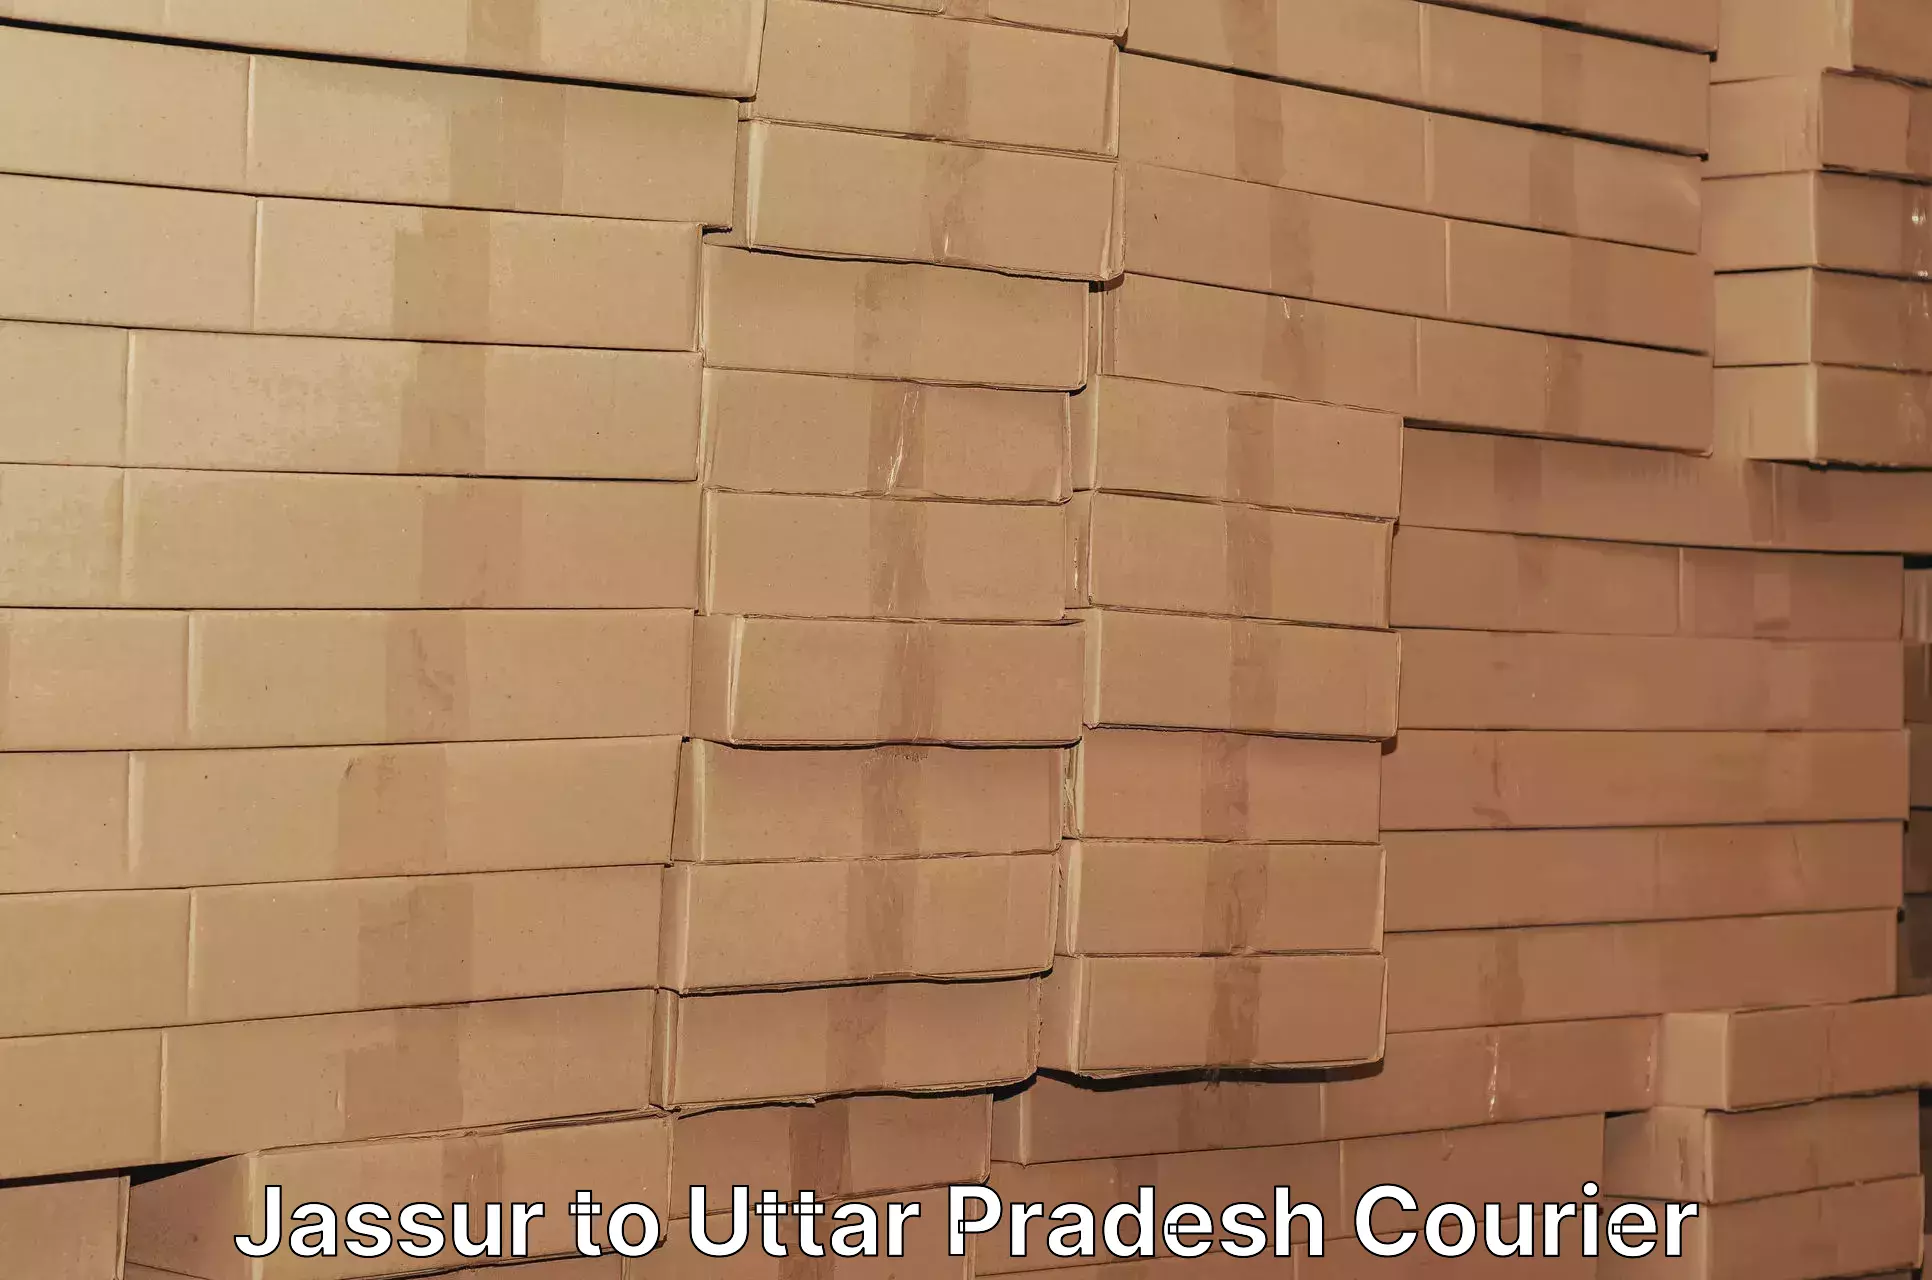 Efficient courier operations Jassur to Gauri Bazar